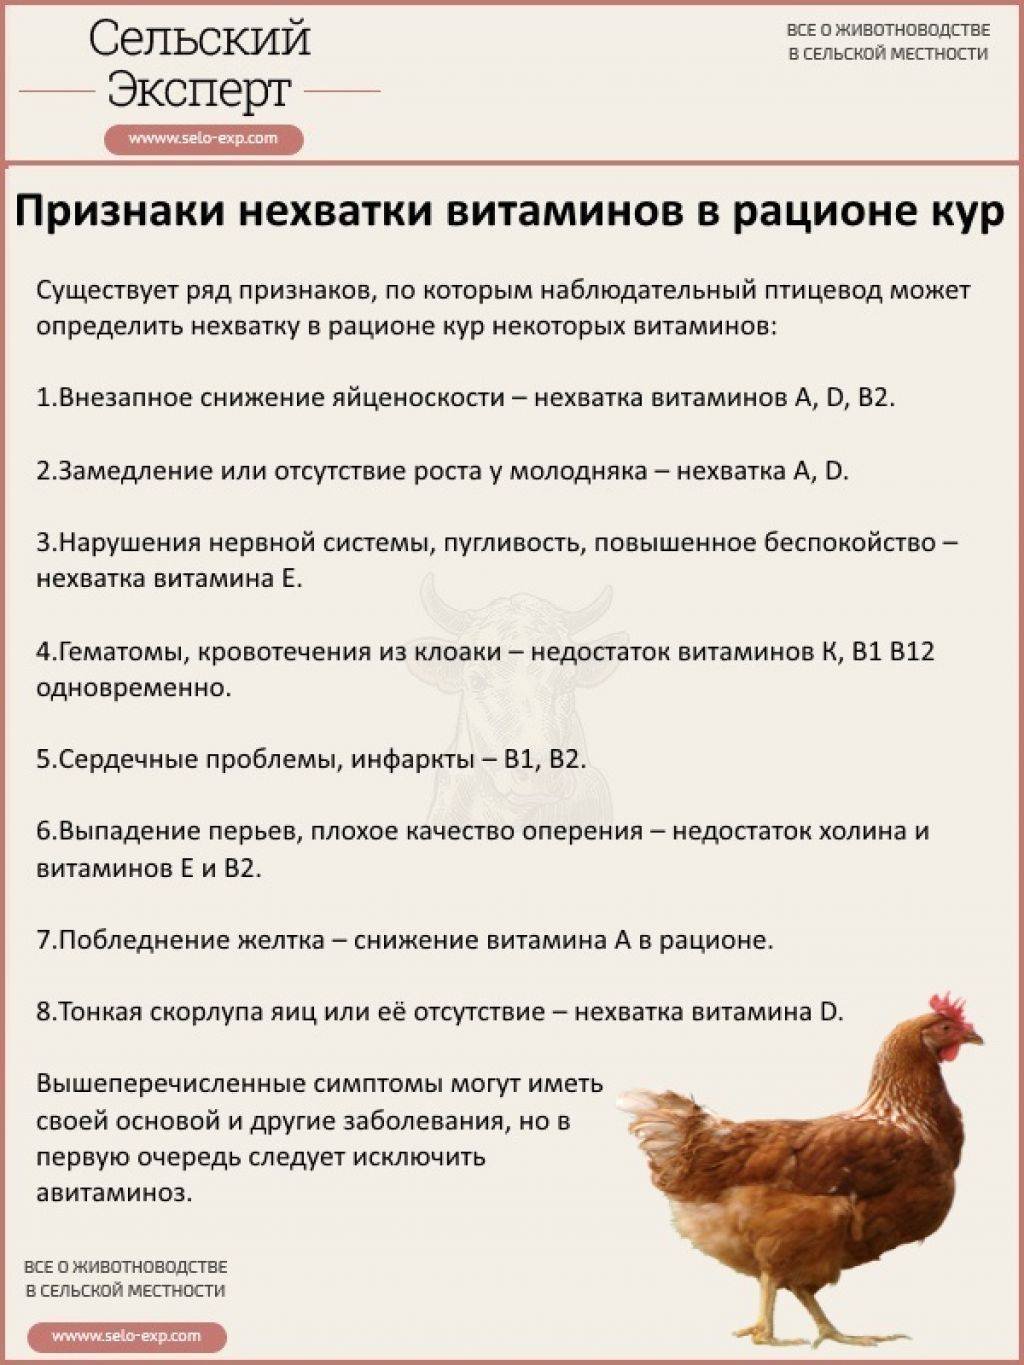 Профилактика кур несушек. Таблица кормления цыплят несушек. Схема кормления кур несушек. Нормы кормления цыплят таблица. Таблица корма цыплят несушек.